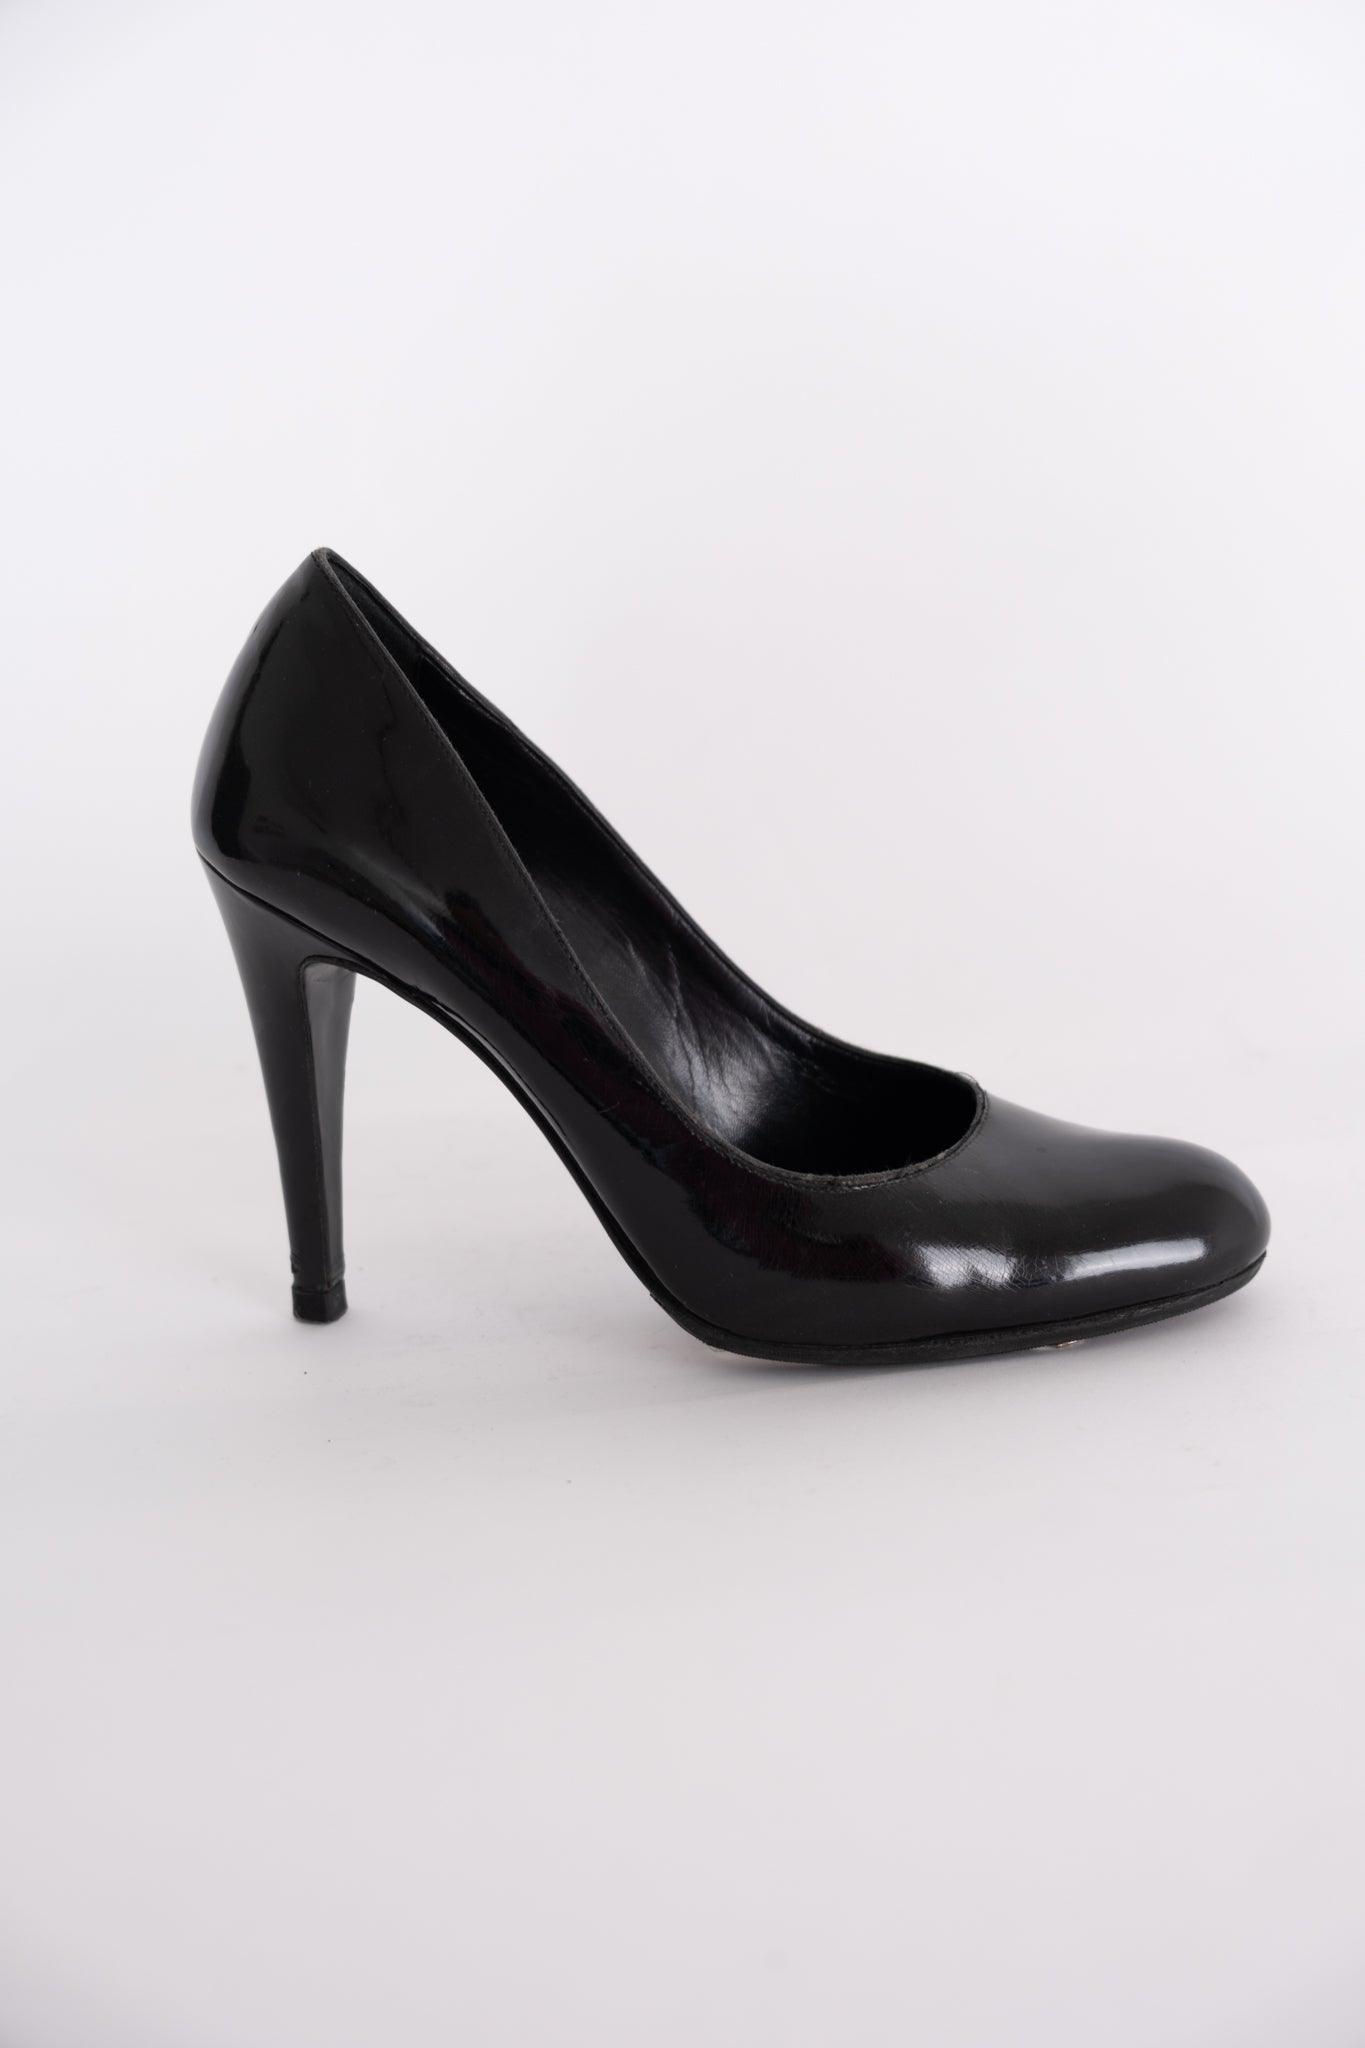 נעלי bally שחורות - Volver